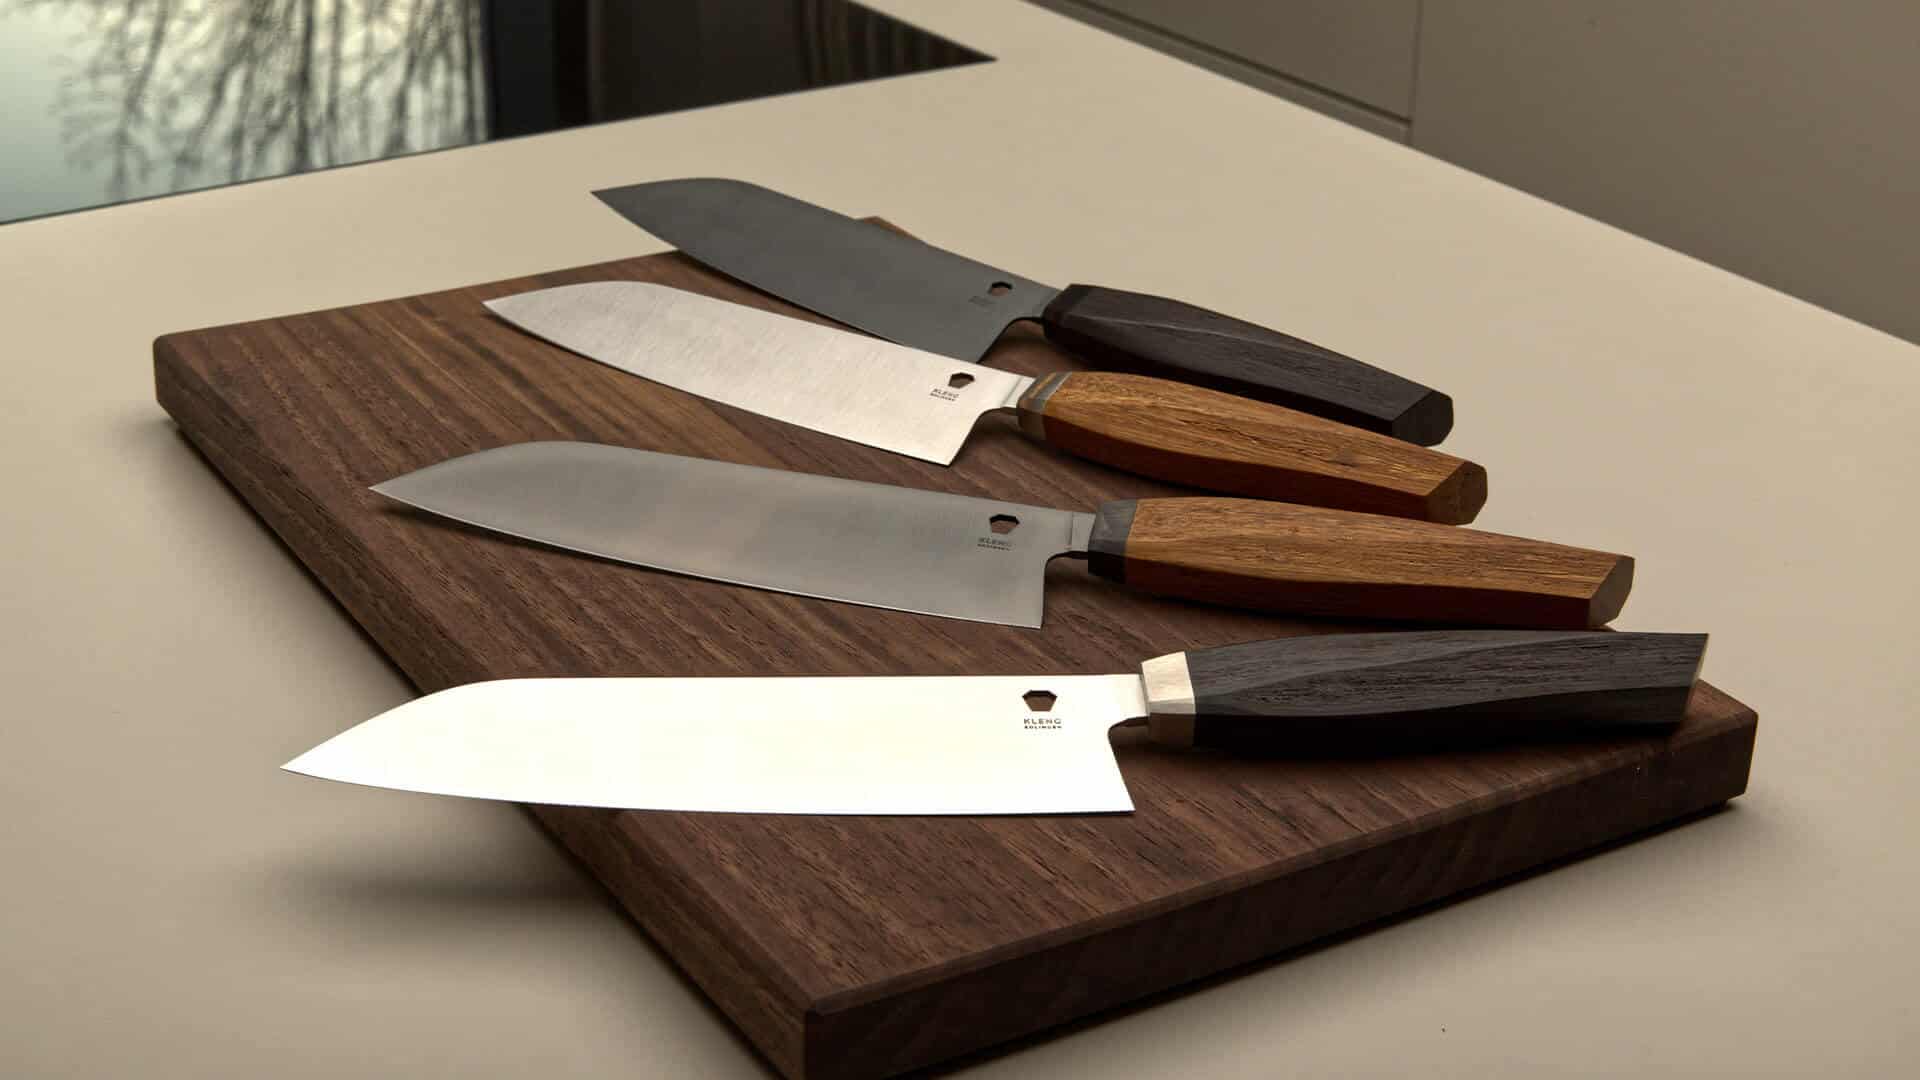 Kheng chef's knife